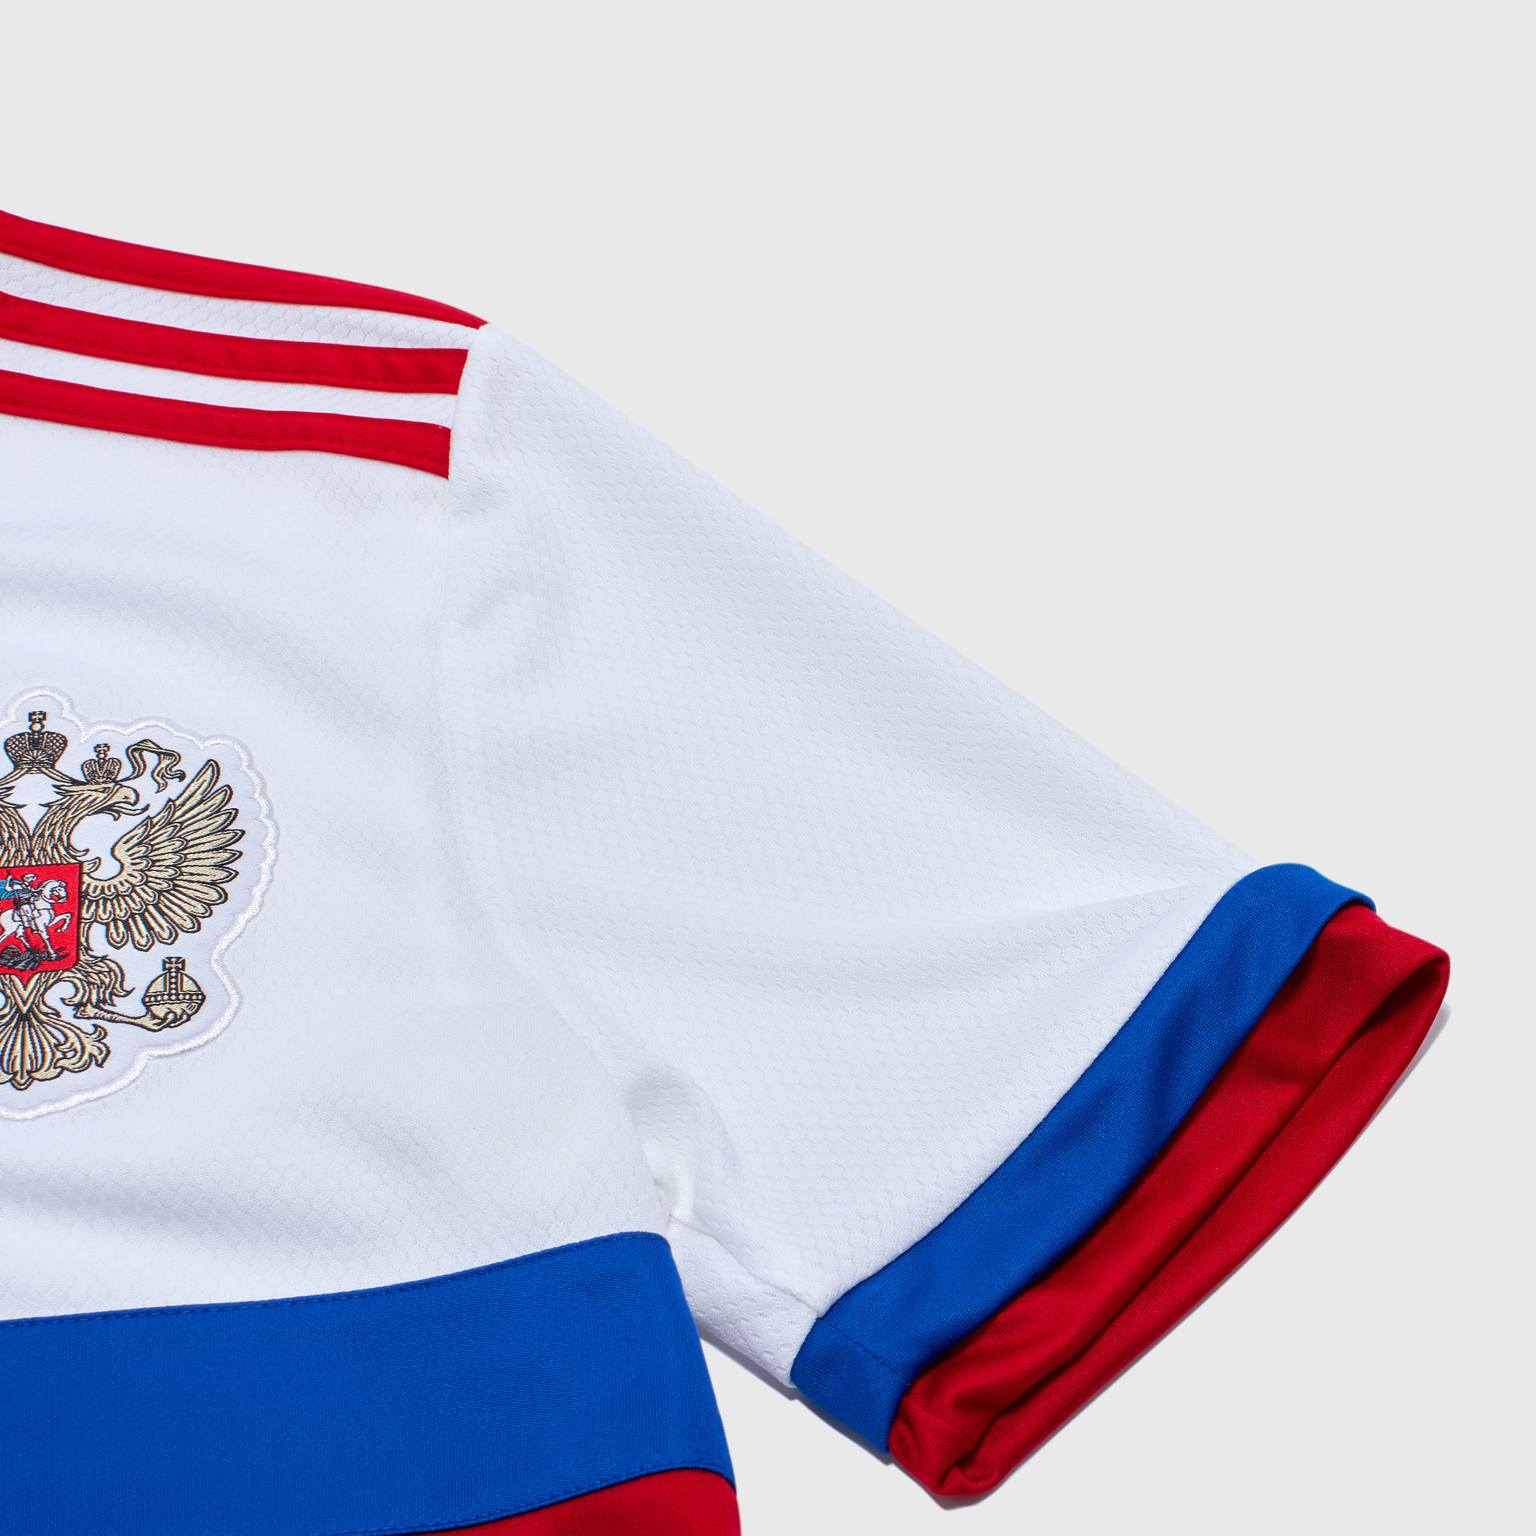 Футболка выездная подростковая Adidas сборной России сезон 2020/21